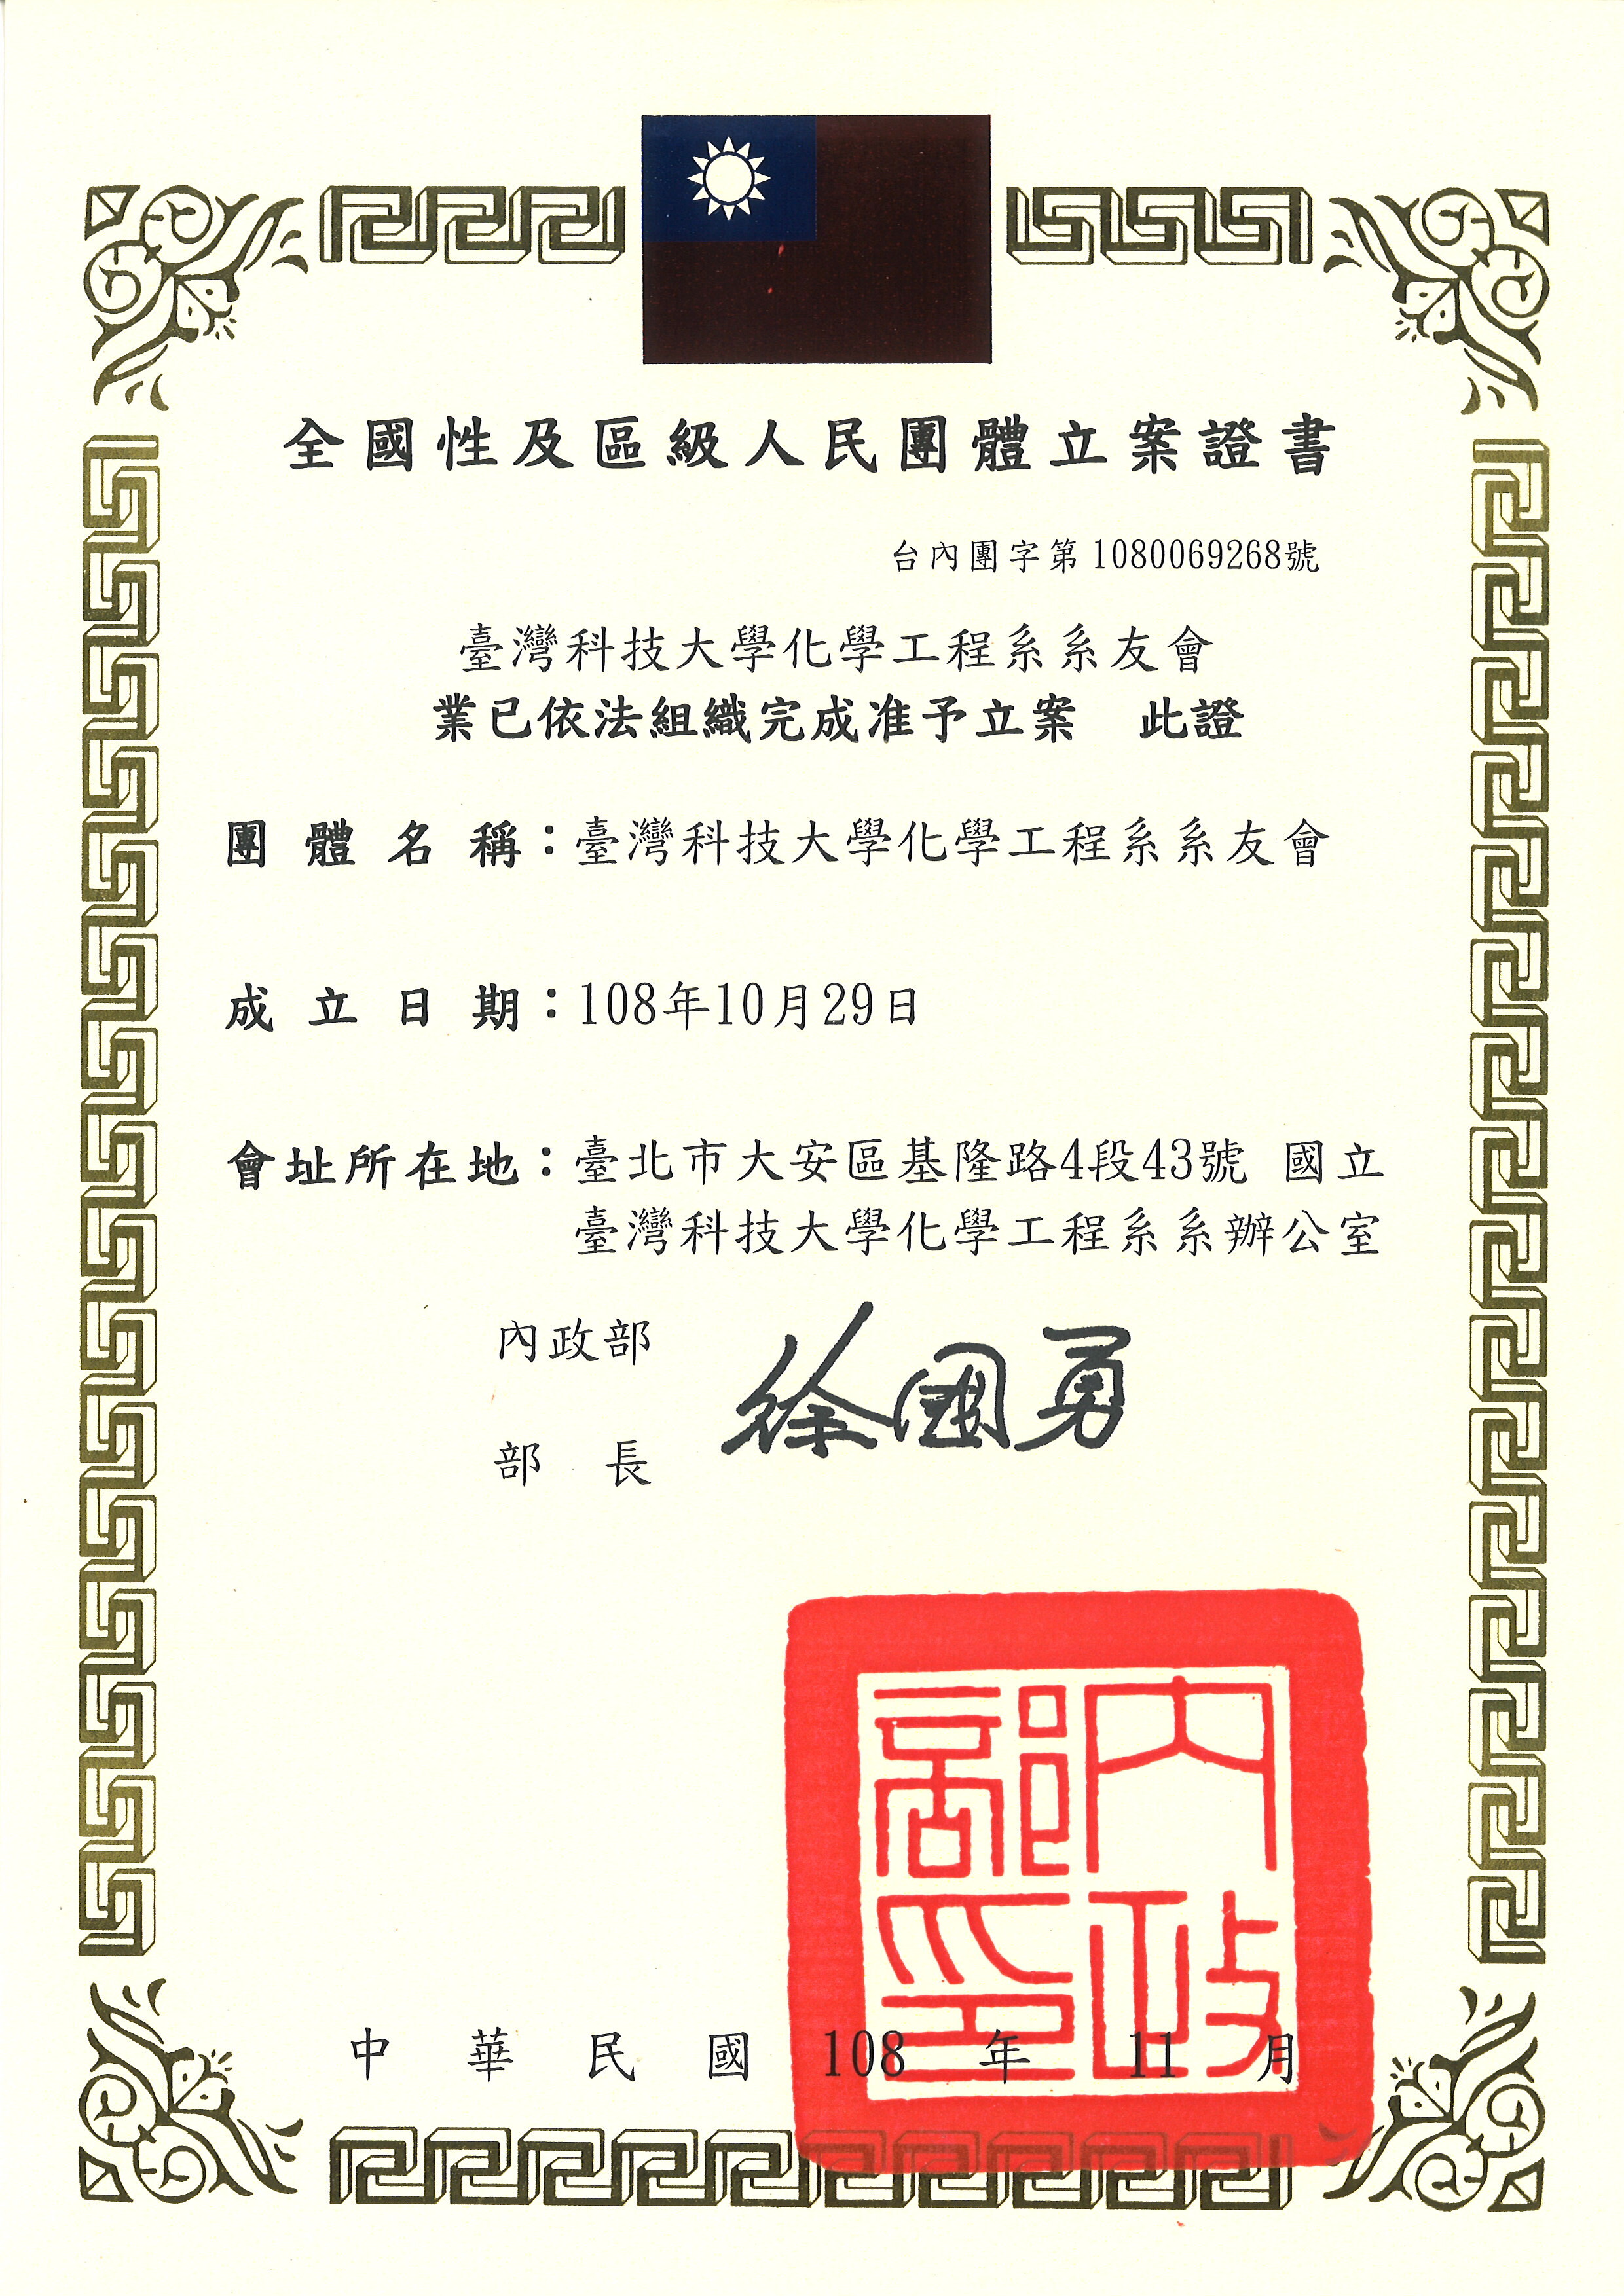 台灣科技大學化學工程系系友會108.10.29內政部核准成立